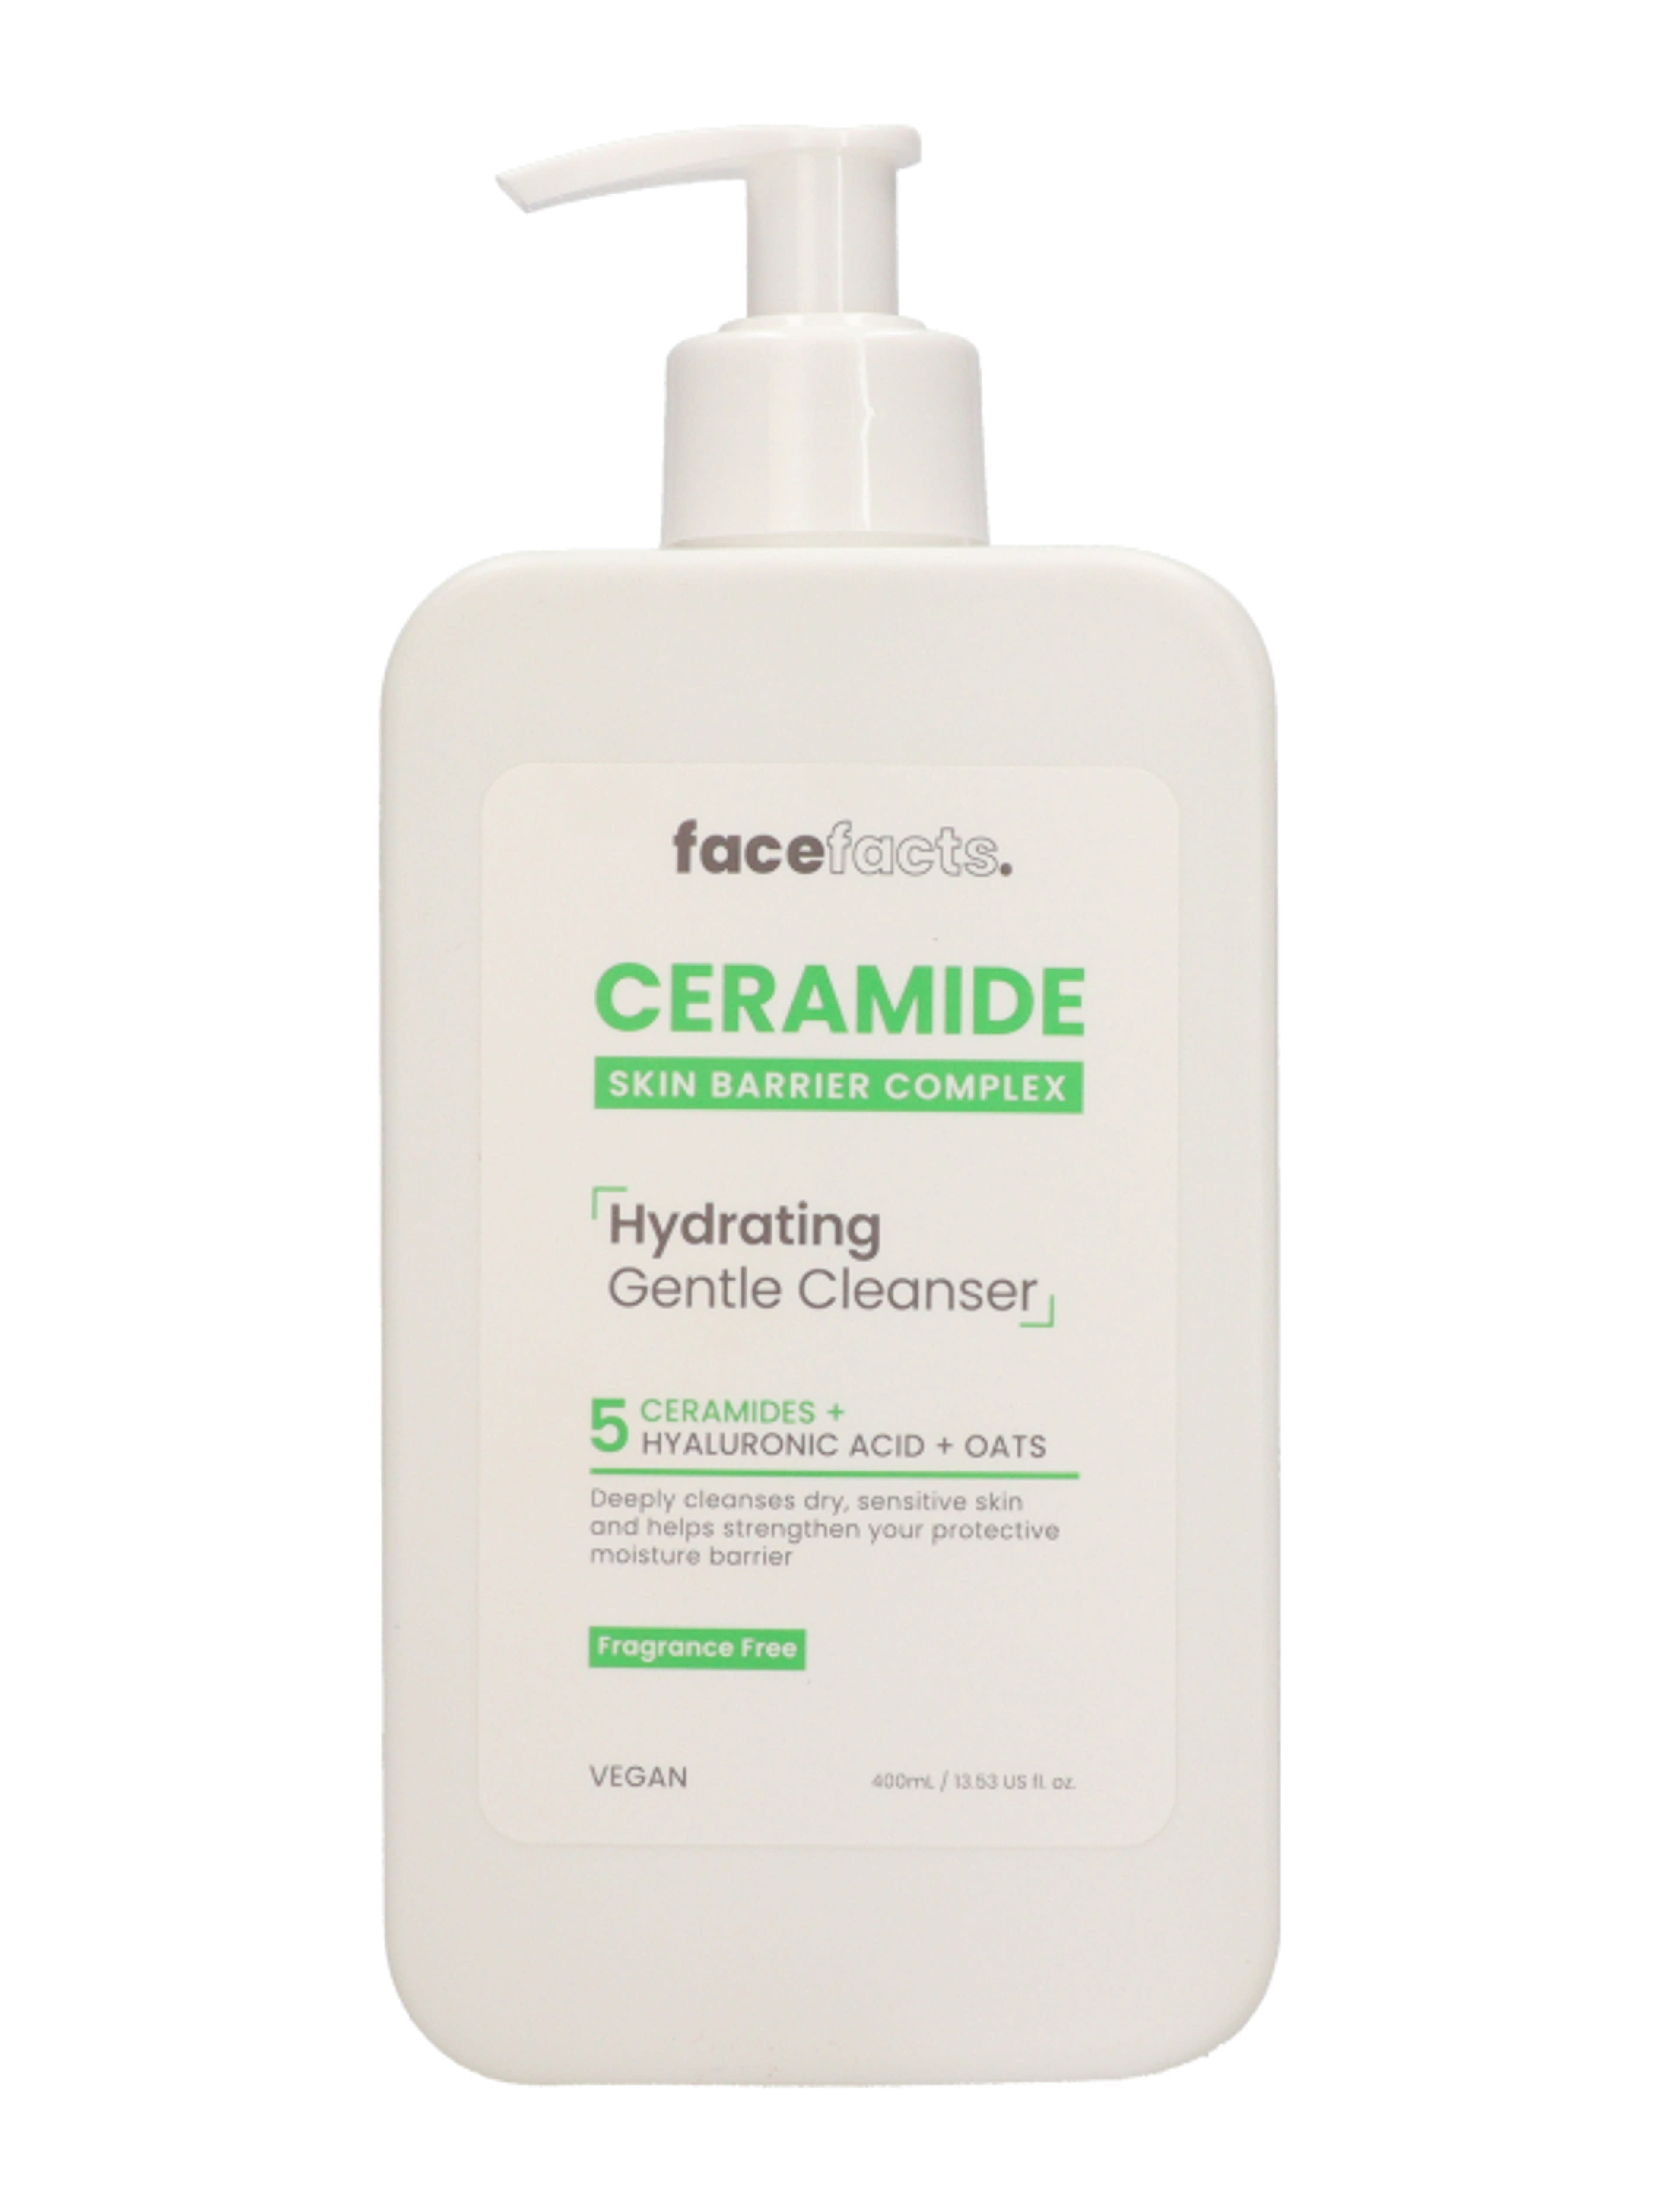 Face Facts Ceramide Hydrating Gentle Cleanser hidratáló arctisztító ceramidokkal - 400 ml